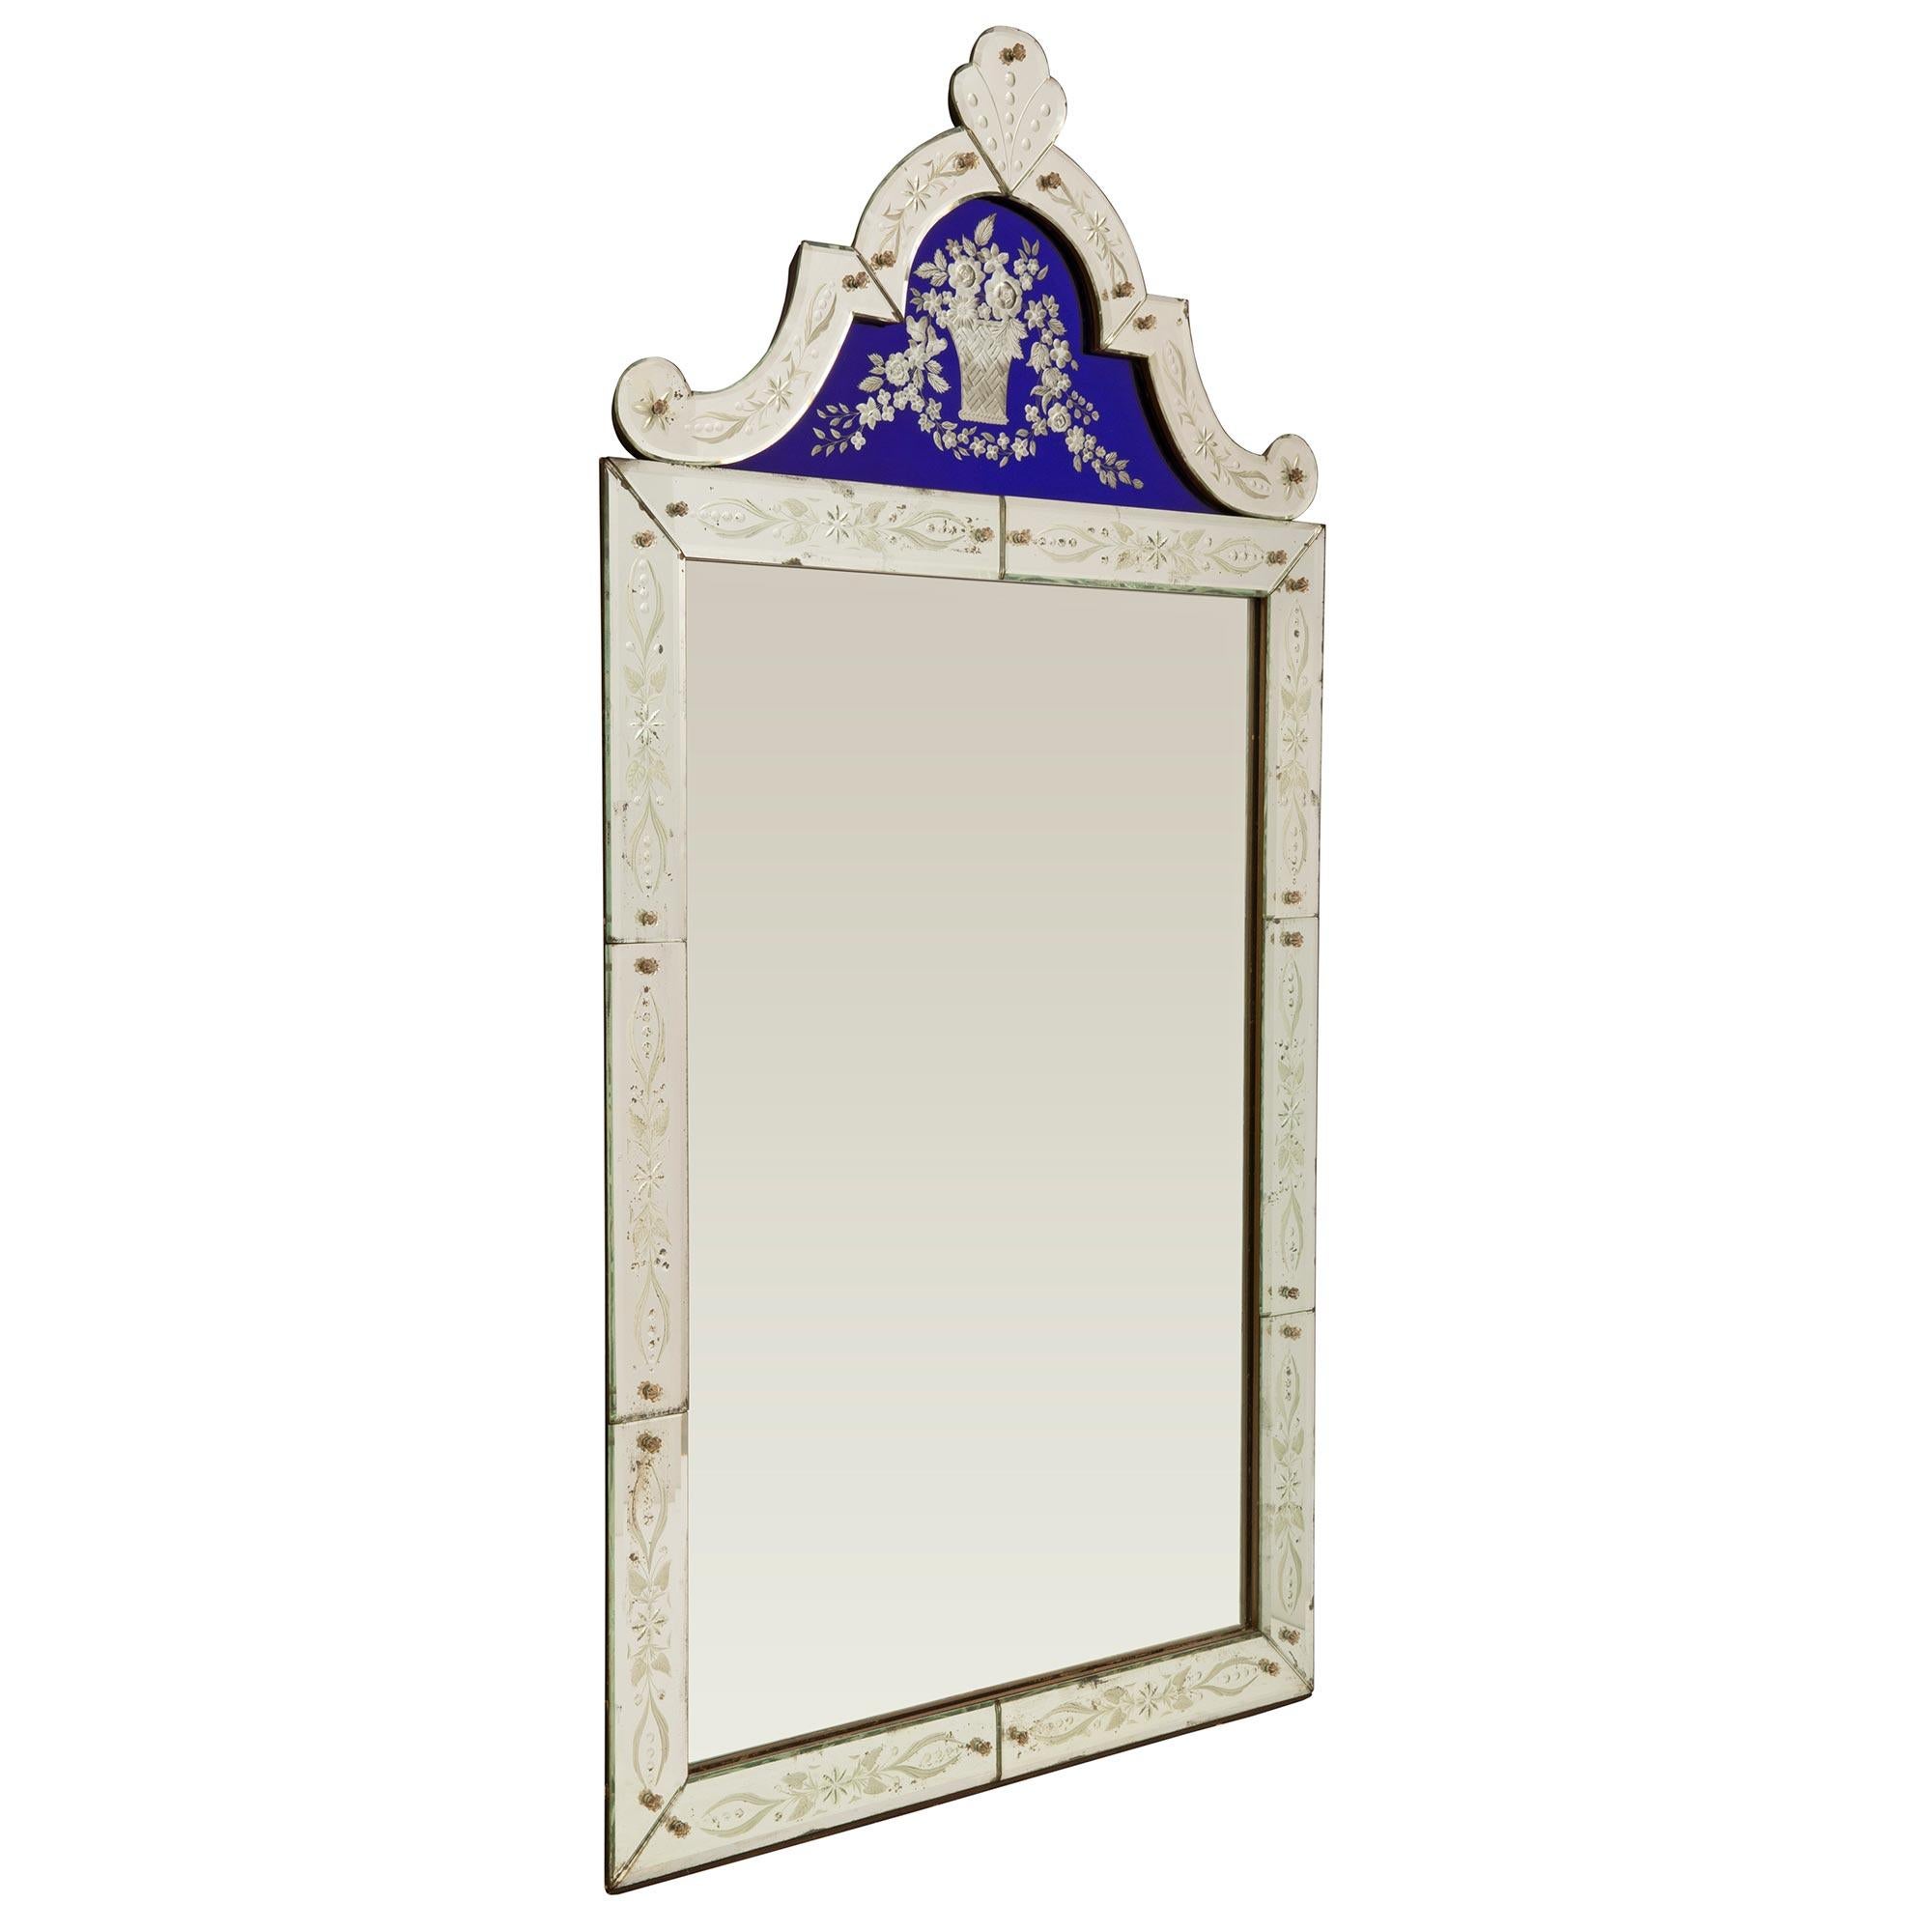 Un superbe miroir vénitien italien du début du siècle, extrêmement décoratif. Ce magnifique miroir a conservé toutes ses plaques d'origine, le miroir central étant encadré par de jolies plaques de miroir gravées aux motifs feuillagés finement